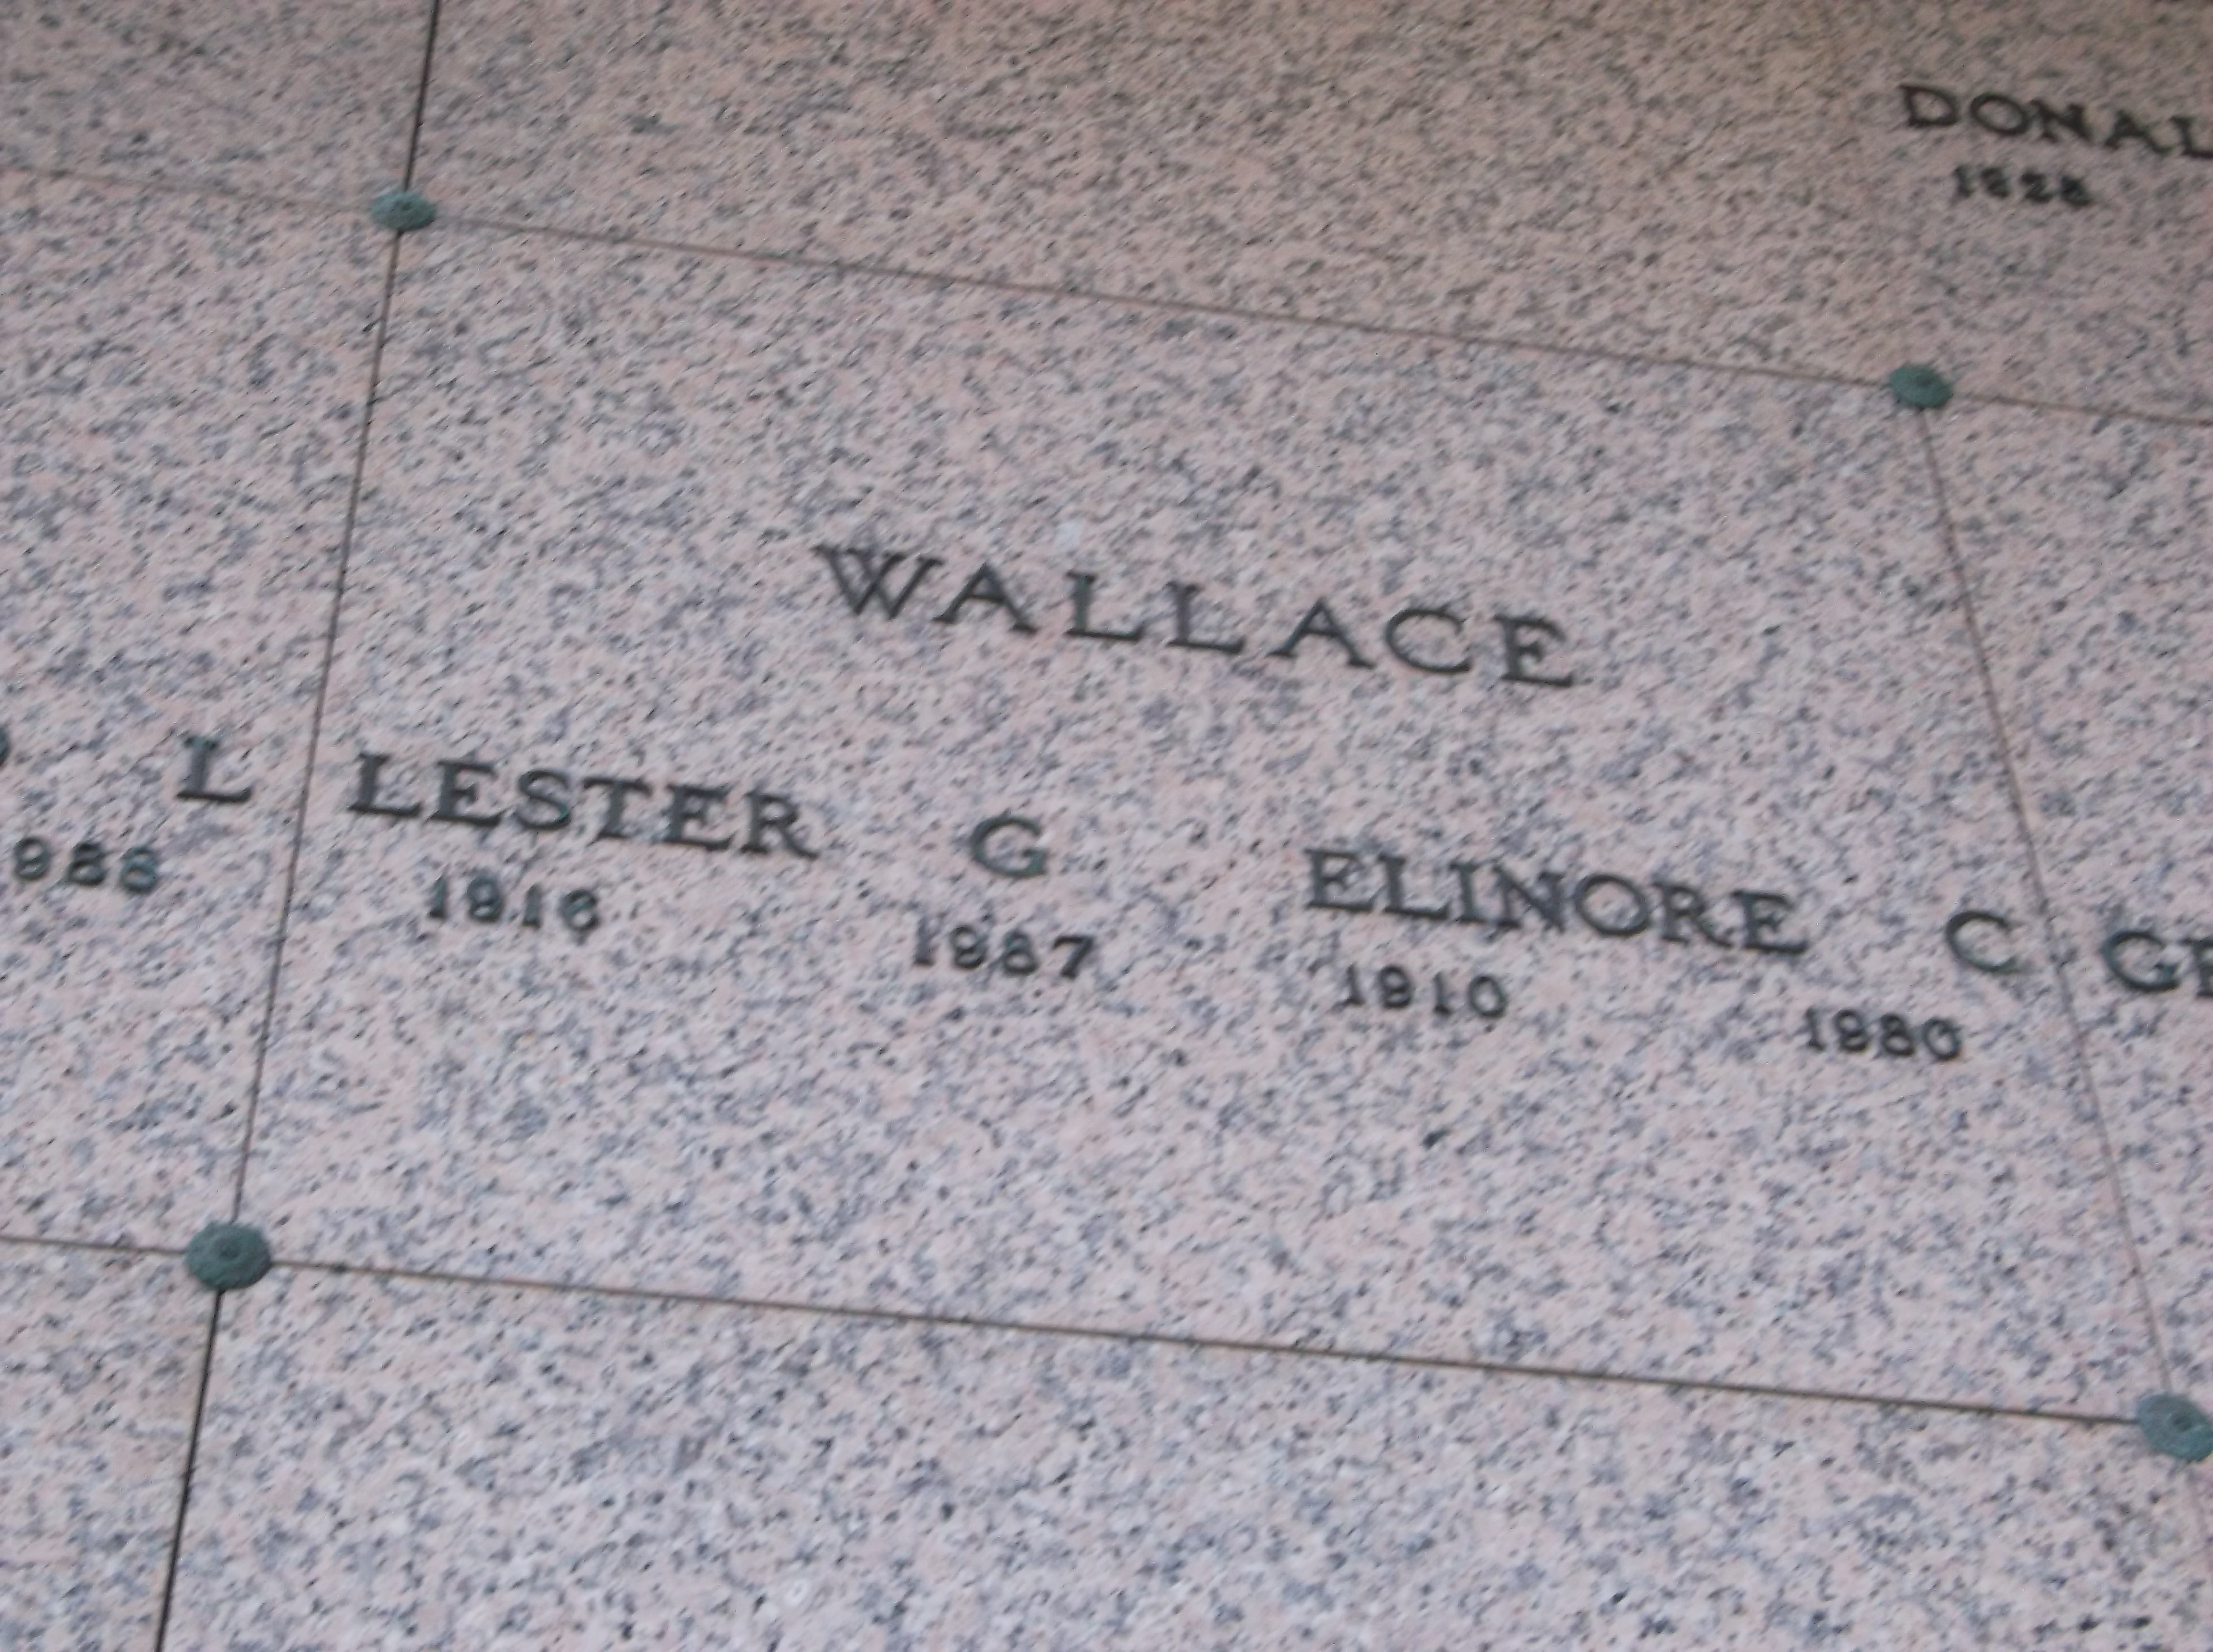 Elinore C Wallace